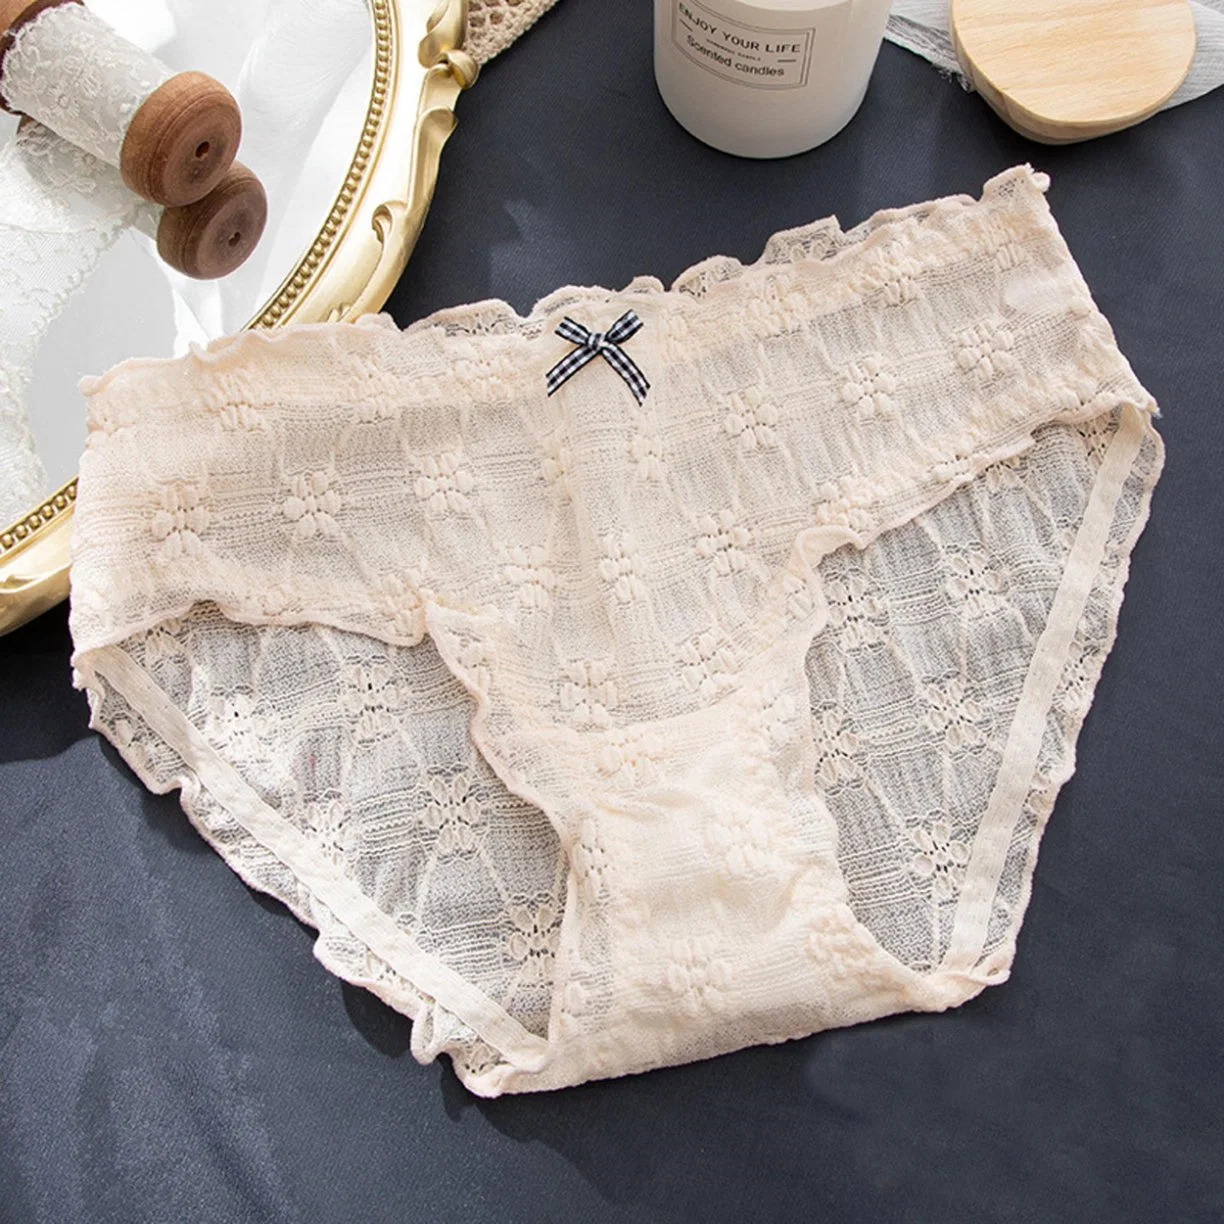 Ladies Bacteriostatic Cotton Crotch Midwaist Underwear Antibacterial Underwear